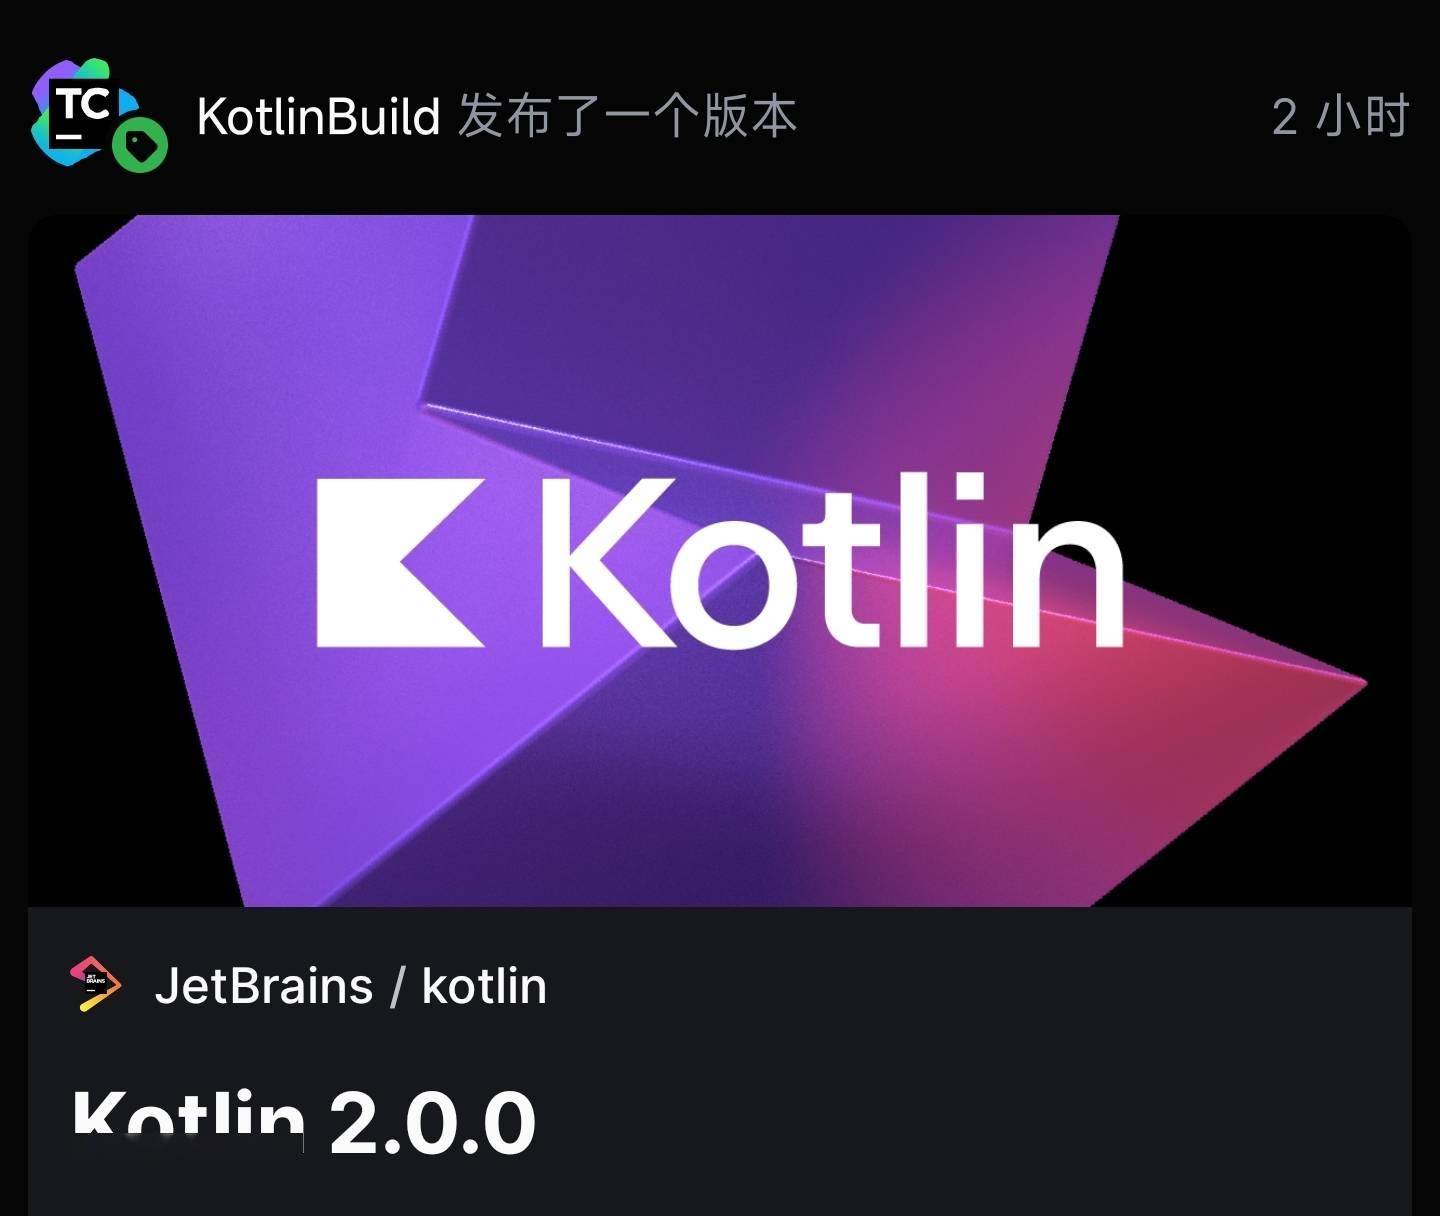 编程语言Kotlin 2.0.0现已发布 性能显著提升